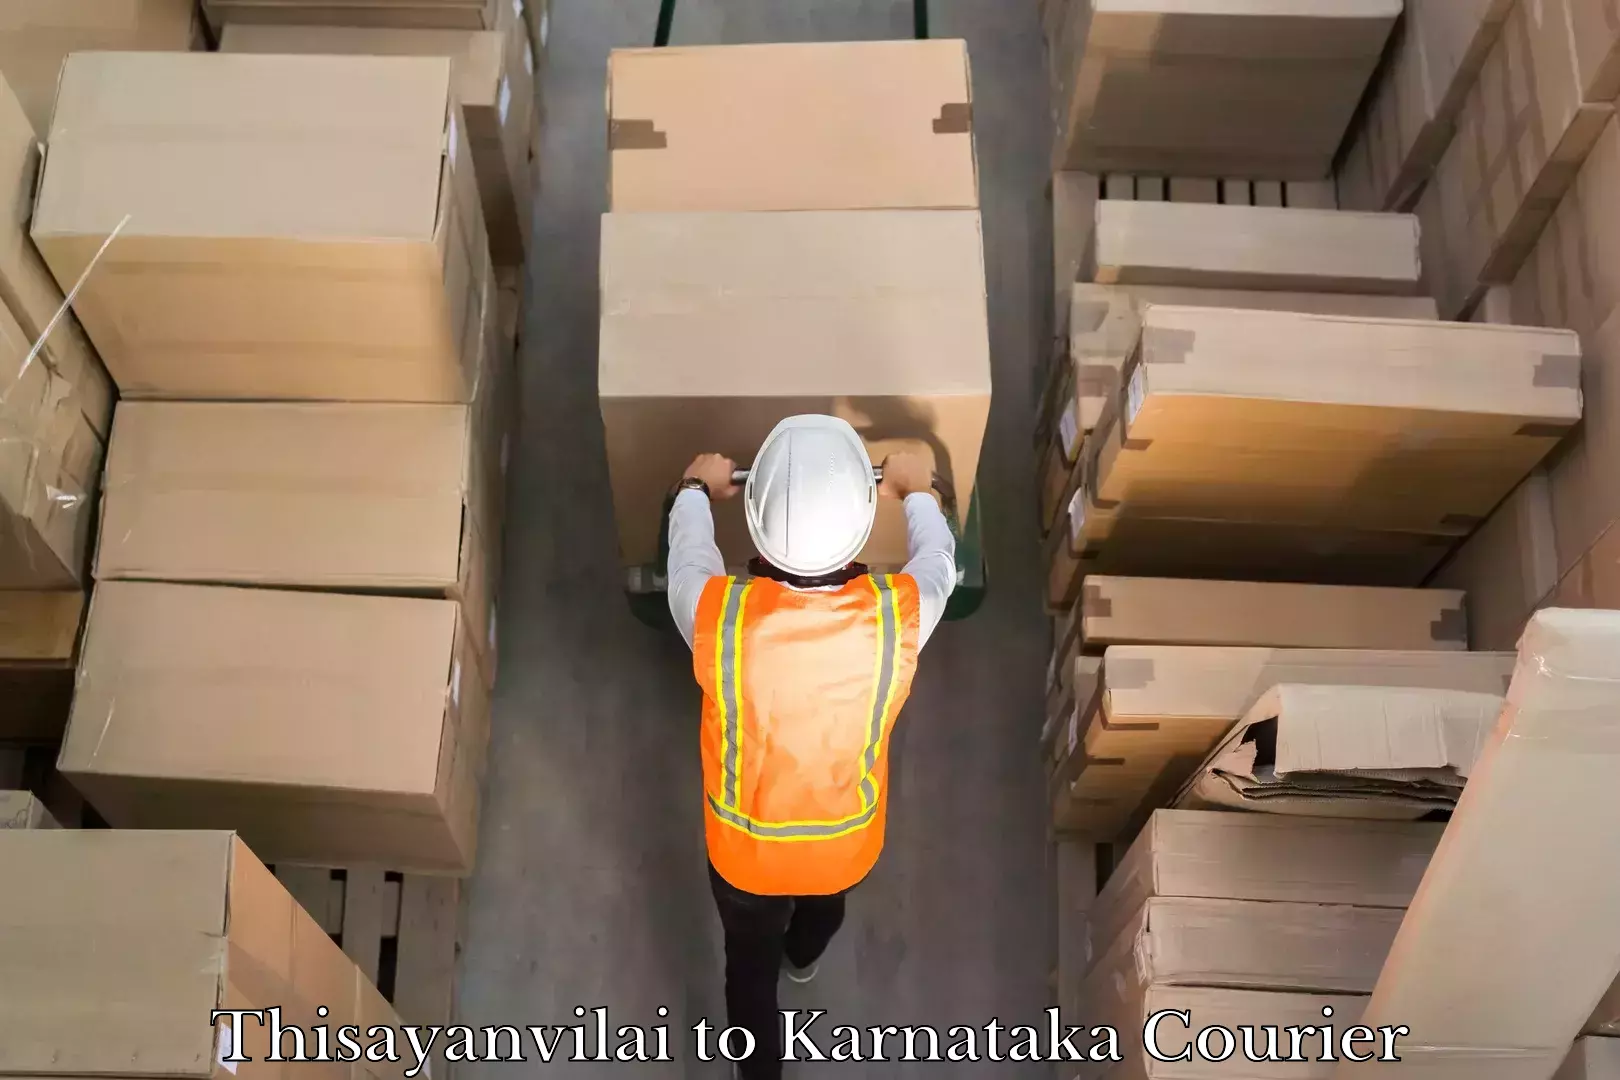 Nationwide shipping capabilities Thisayanvilai to Karnataka